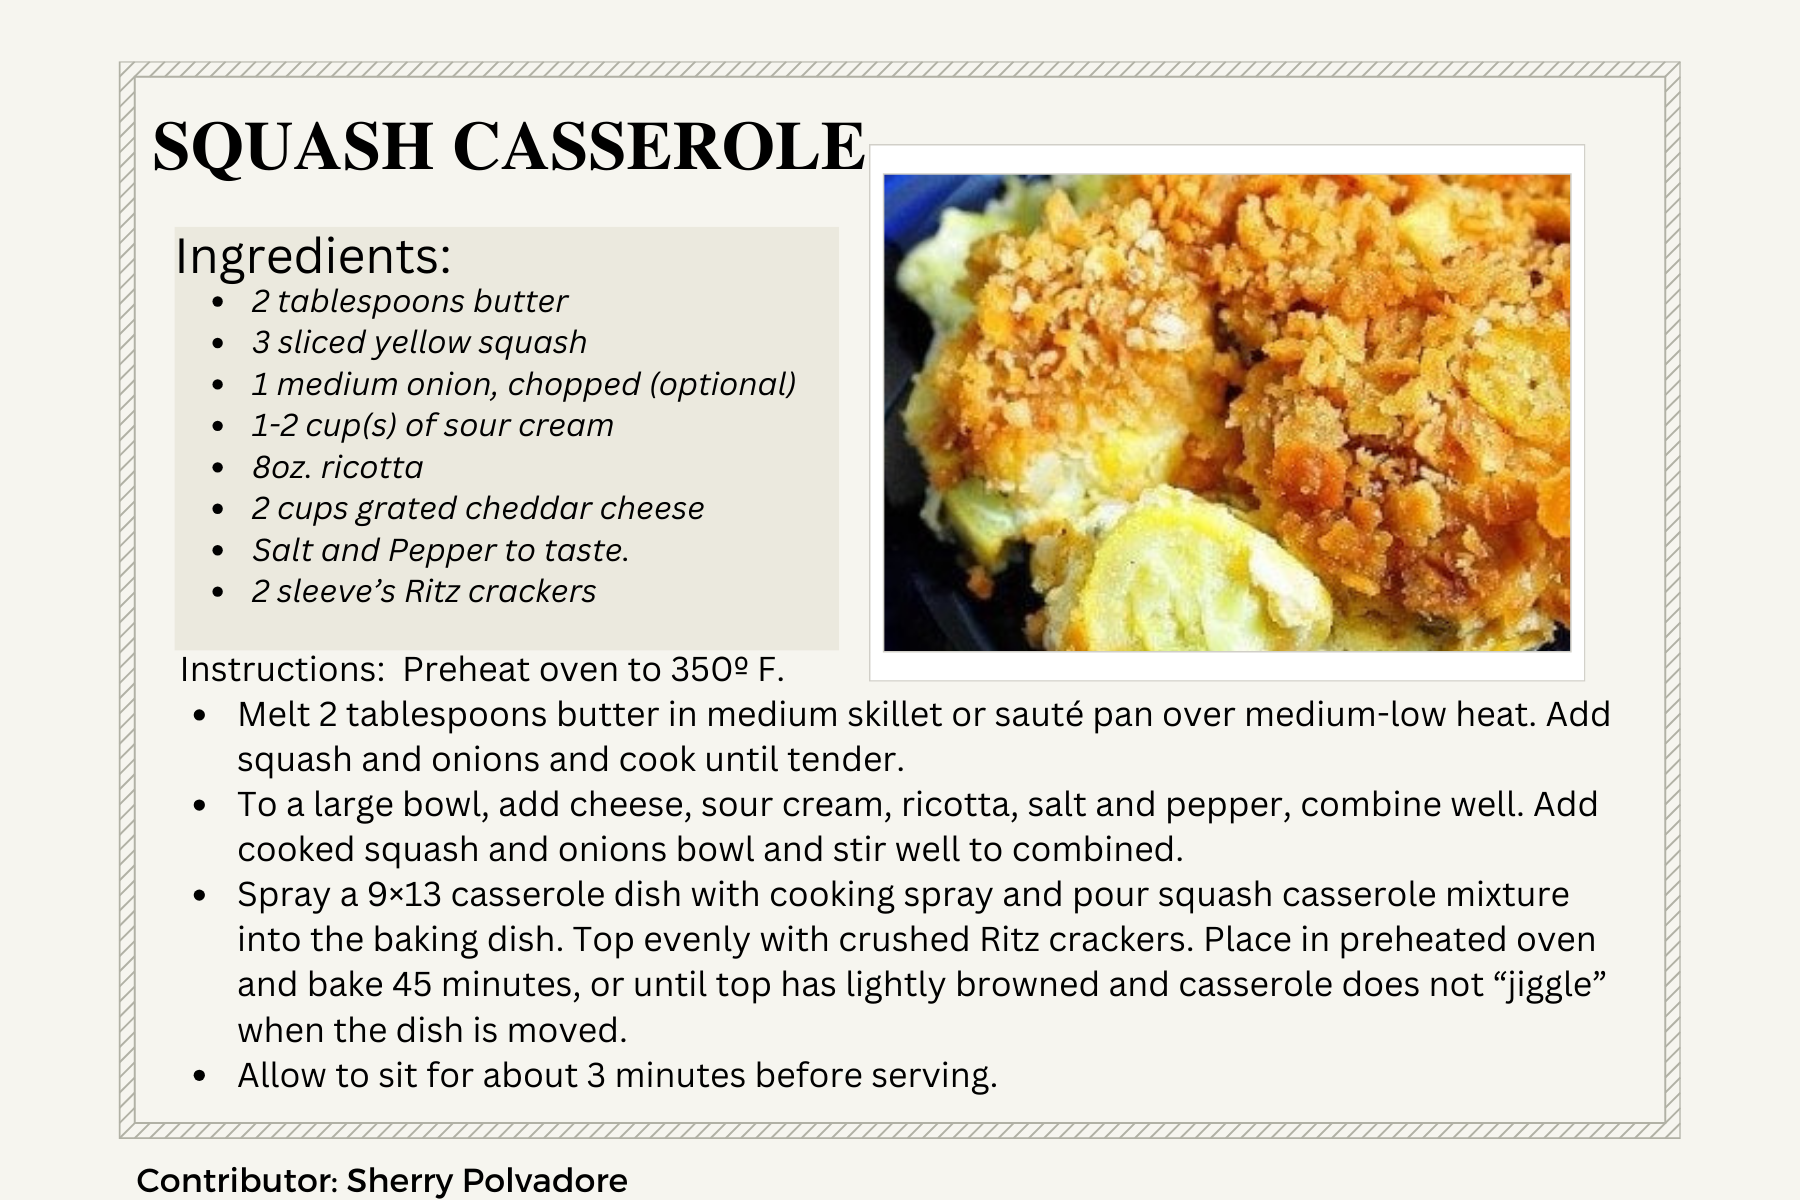 Squash casserole recipe